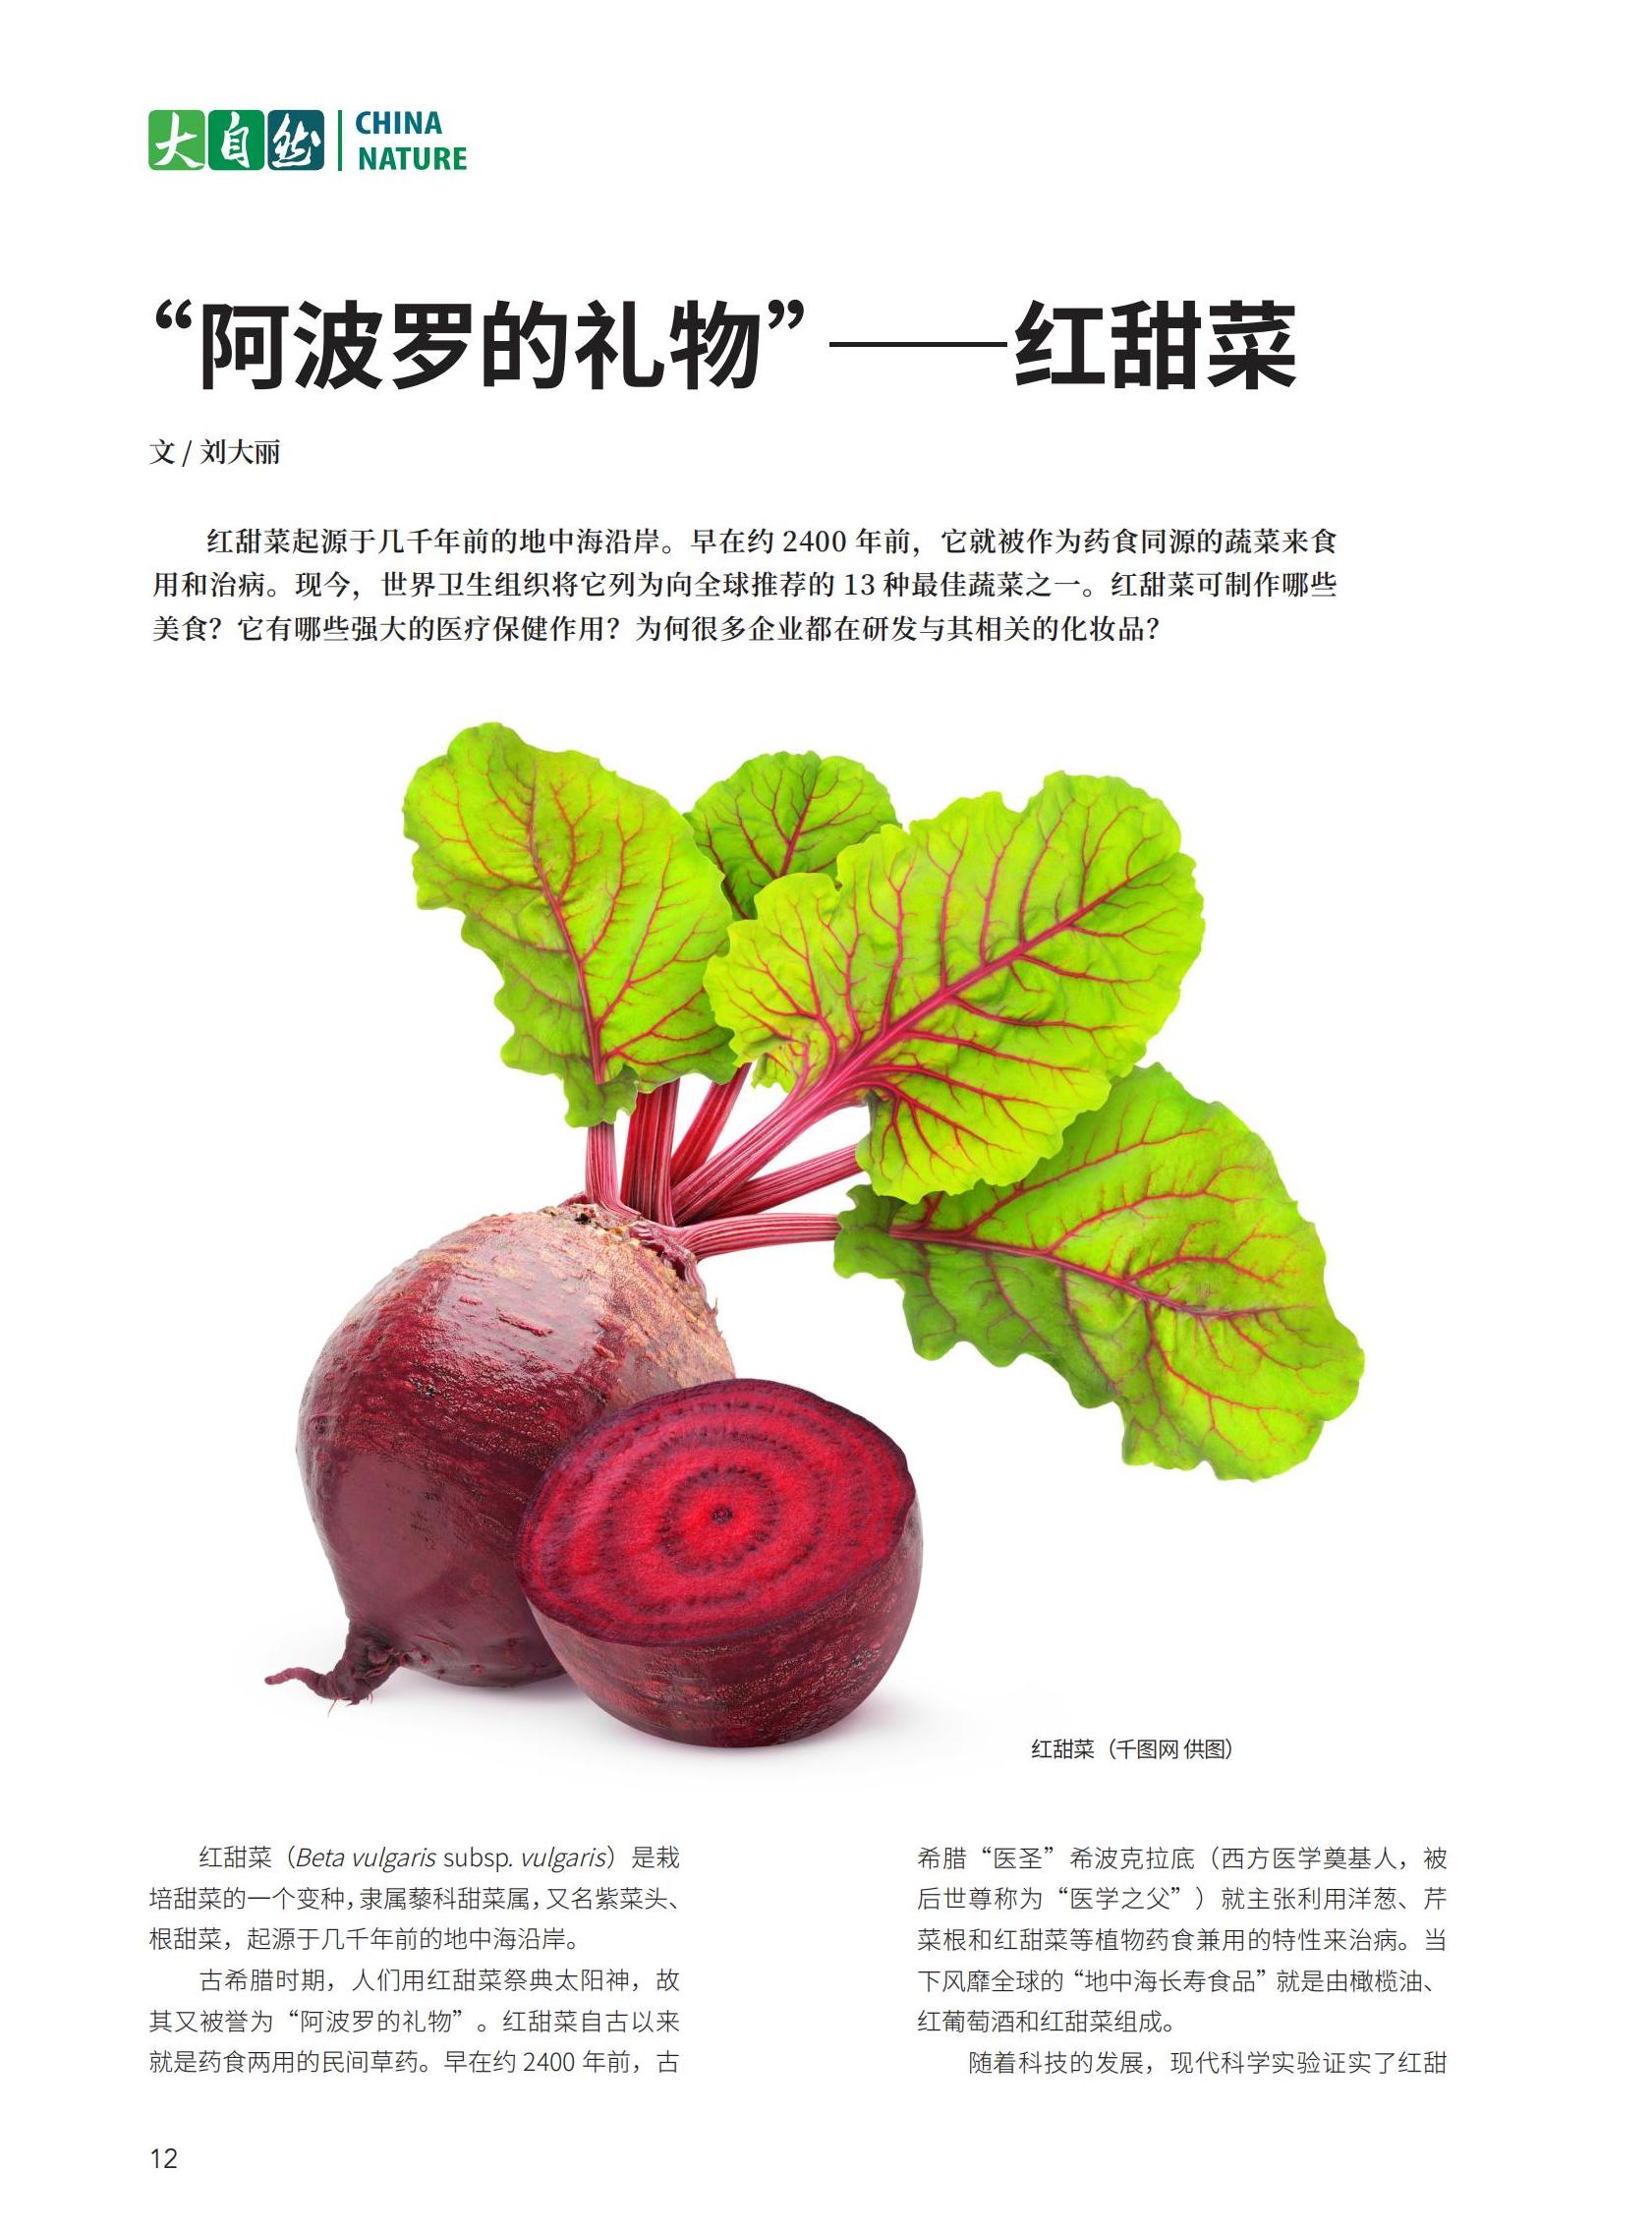 12“阿波罗的礼物”——红甜菜-刘大丽_00.jpg